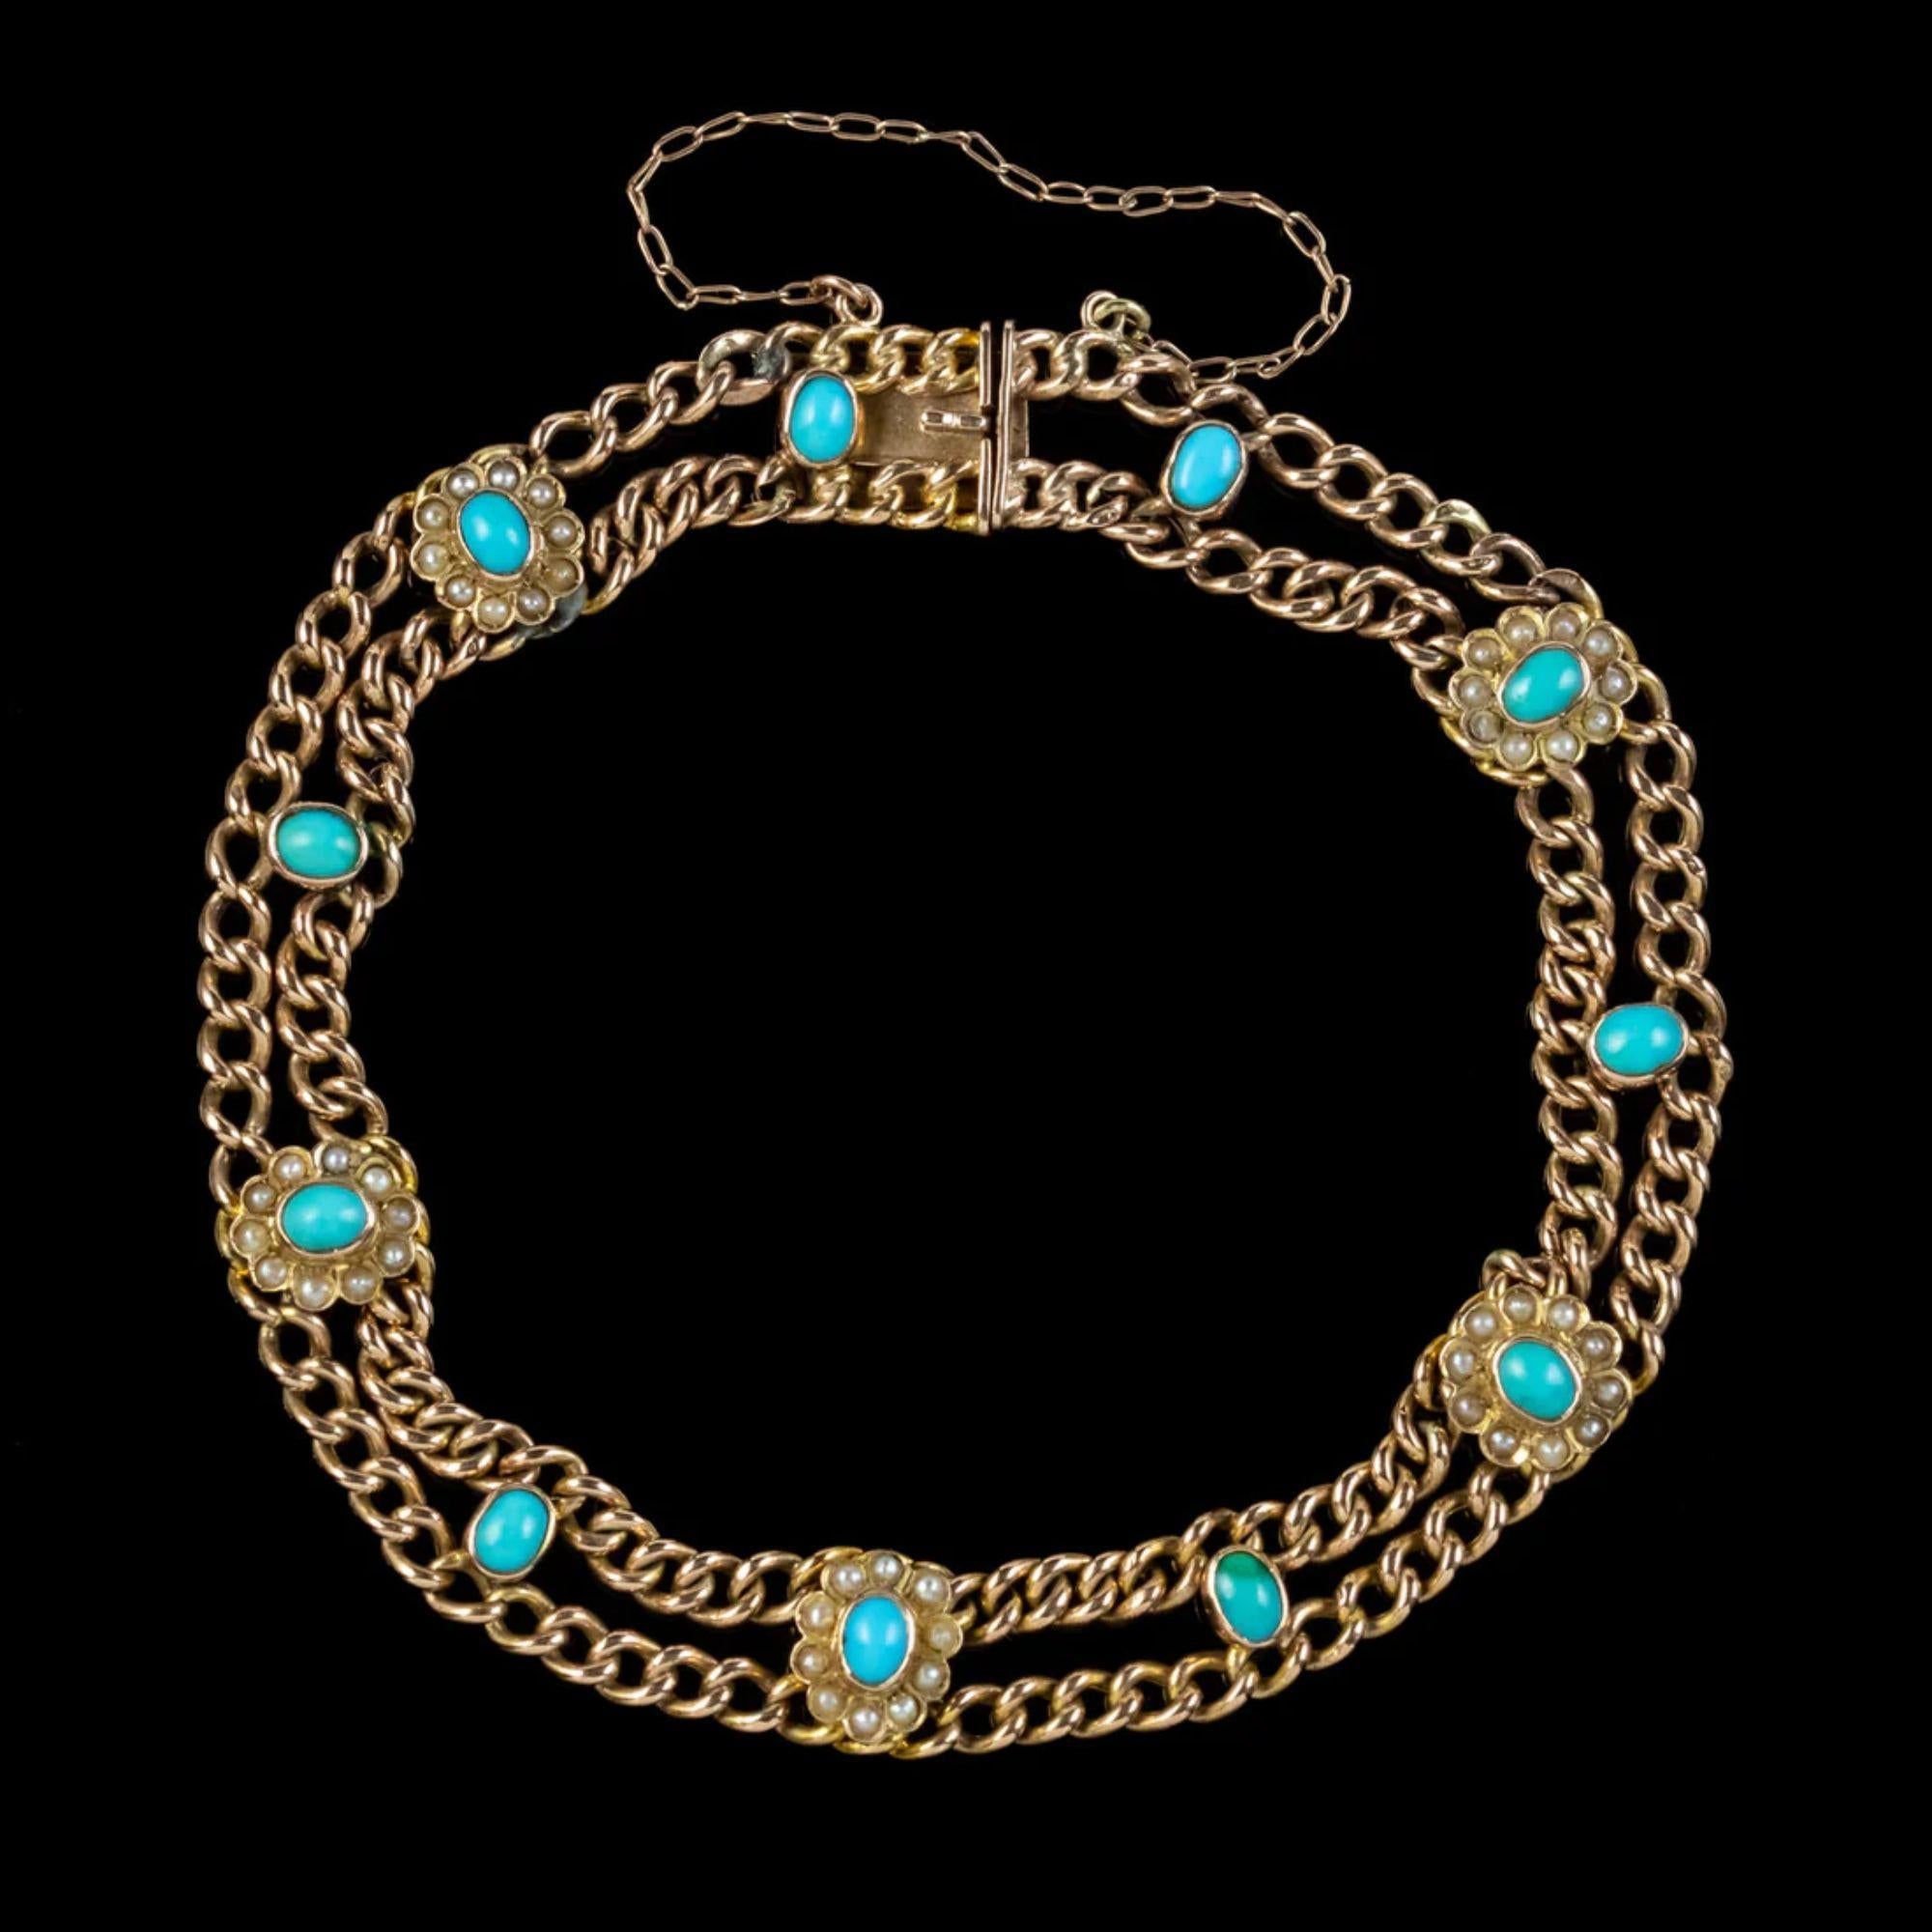 Ein wunderschönes antikes viktorianisches Armband aus dem späten 19. Jahrhundert mit zwei Panzerketten, die mit türkisfarbenen Blumen durchsetzt und mit Perlenblättern besetzt sind. 

Das Schmuckstück besteht aus 9-karätigem Gold und ist mit einem